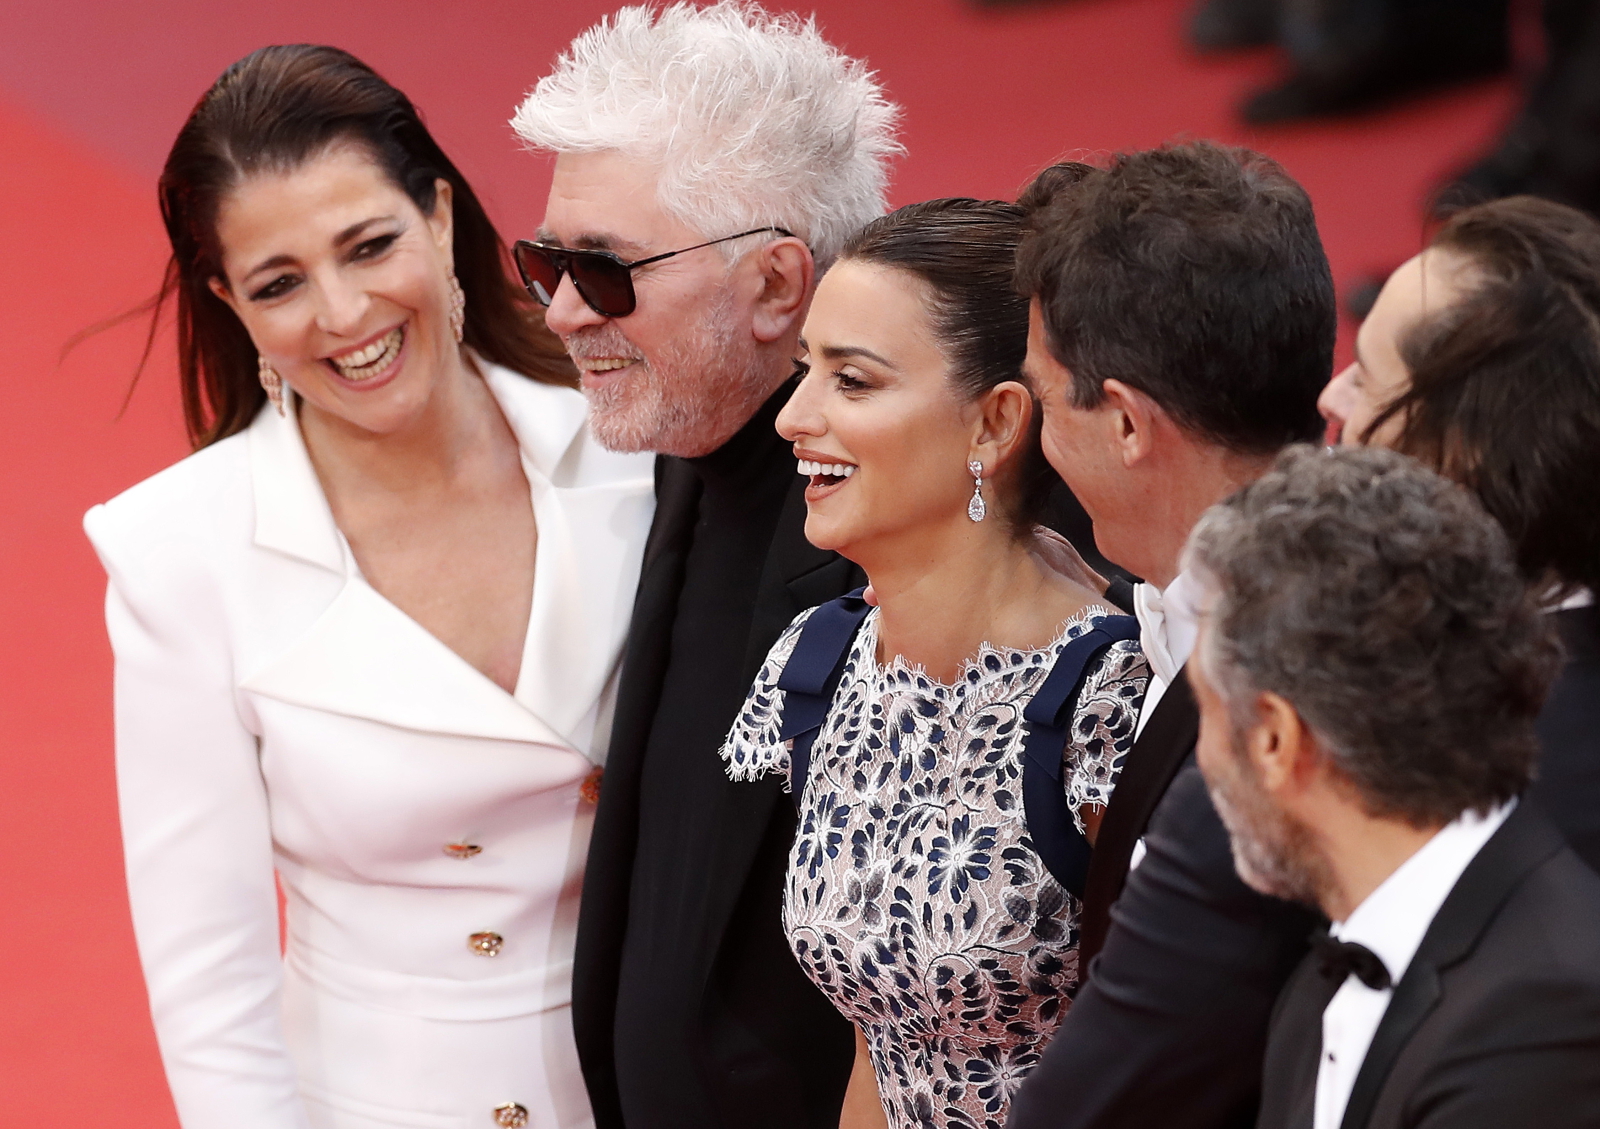 Gwiazdy na festiwalu w Cannes EPA/GUILLAUME HORCAJUELO 